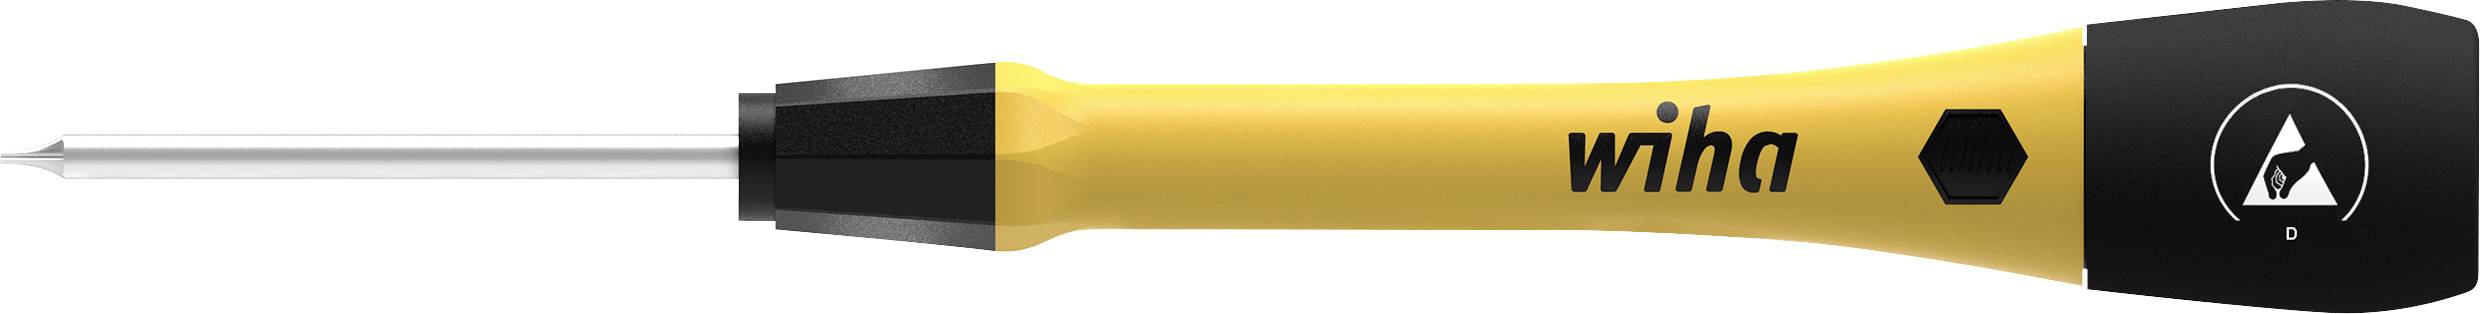 WIHA PicoFinish Elektriker Torx-Schraubendreher Größe (Schraubendreher) T 7 Klingenlänge: 40 mm (437